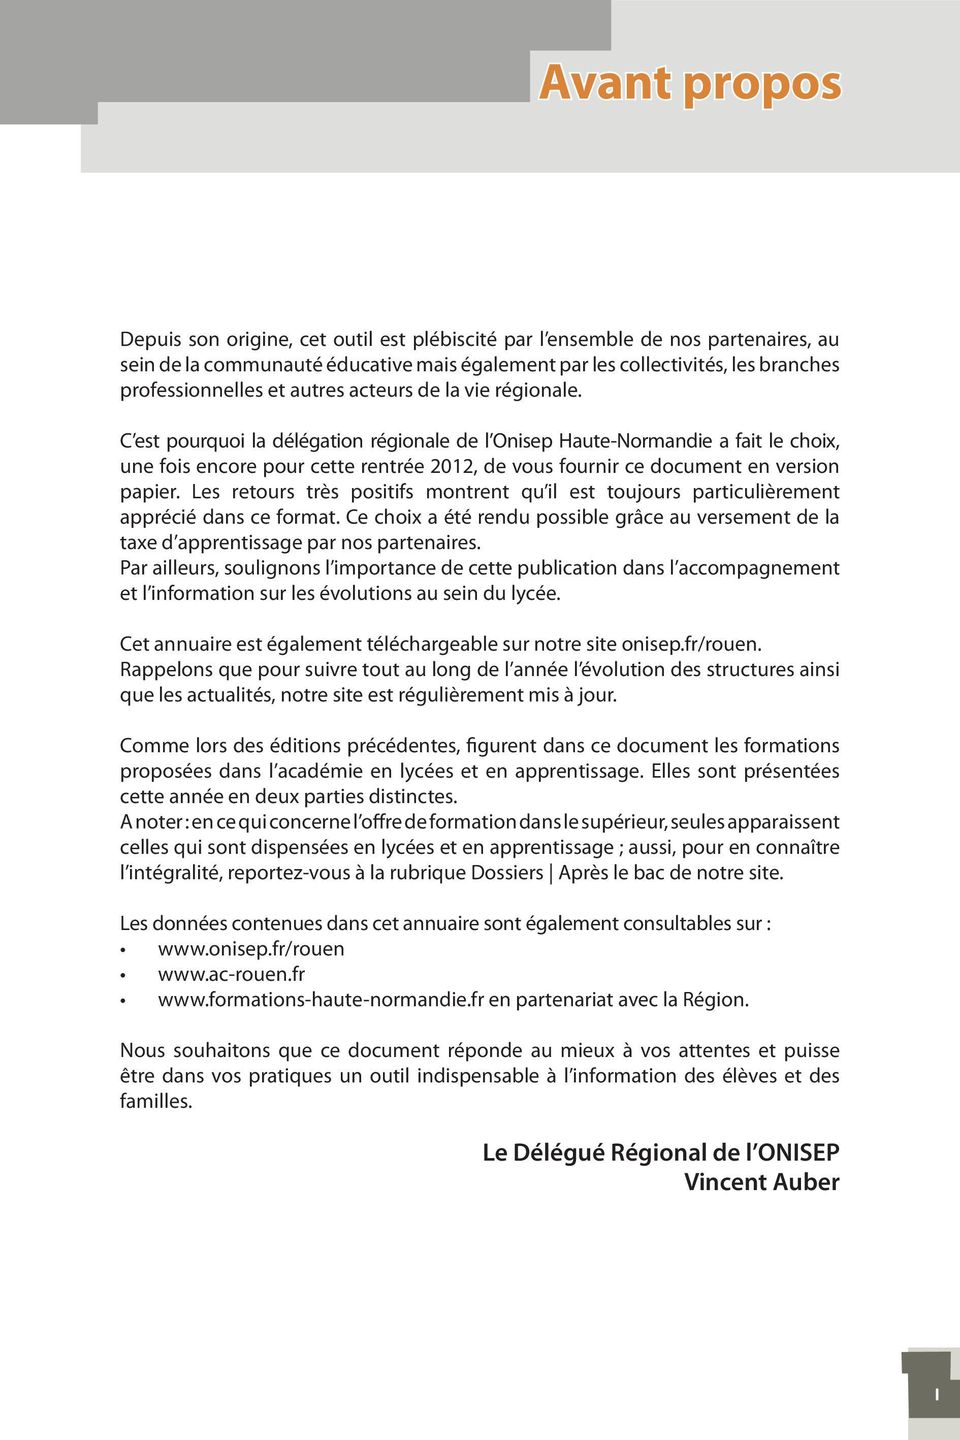 C est pourquoi la délégation régionale de l Onisep Haute-Normandie a fait le choix, une fois encore pour cette rentrée 2012, de vous fournir ce document en version papier.